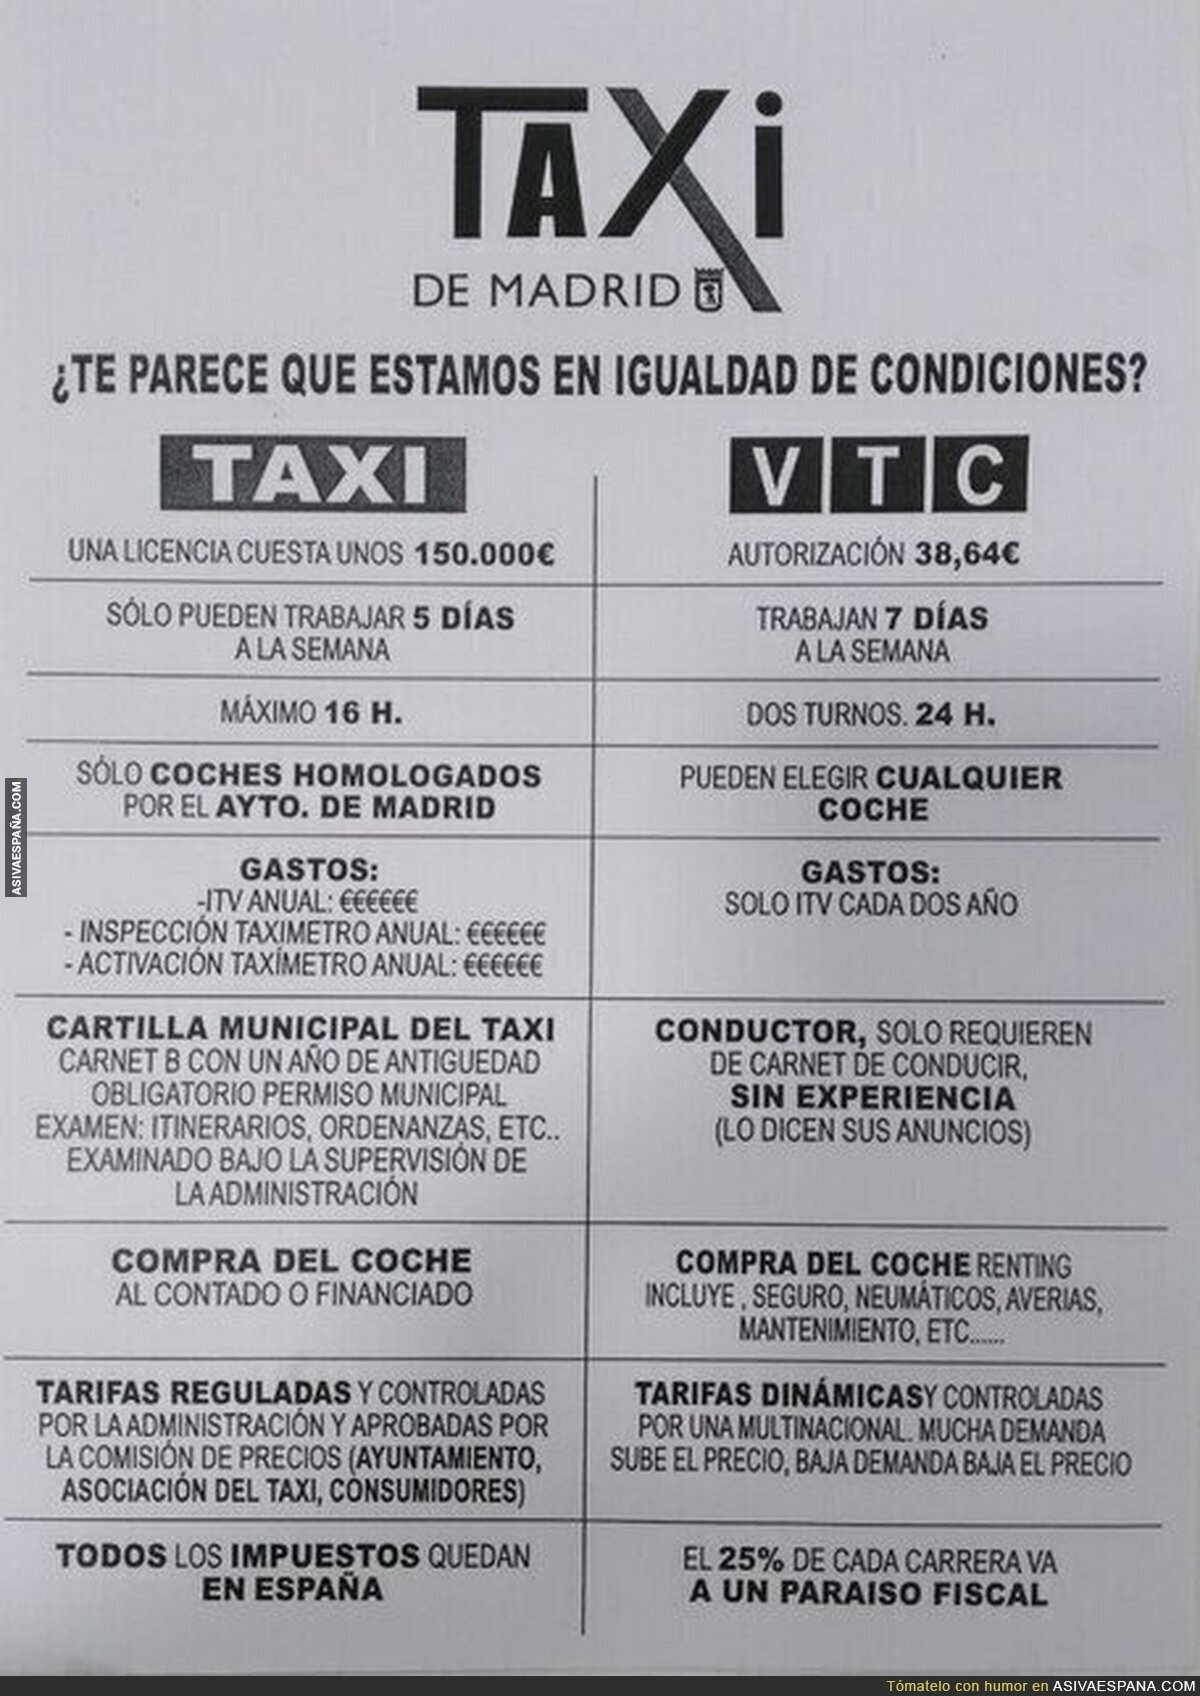 La gran diferencia entre Taxis y VTC